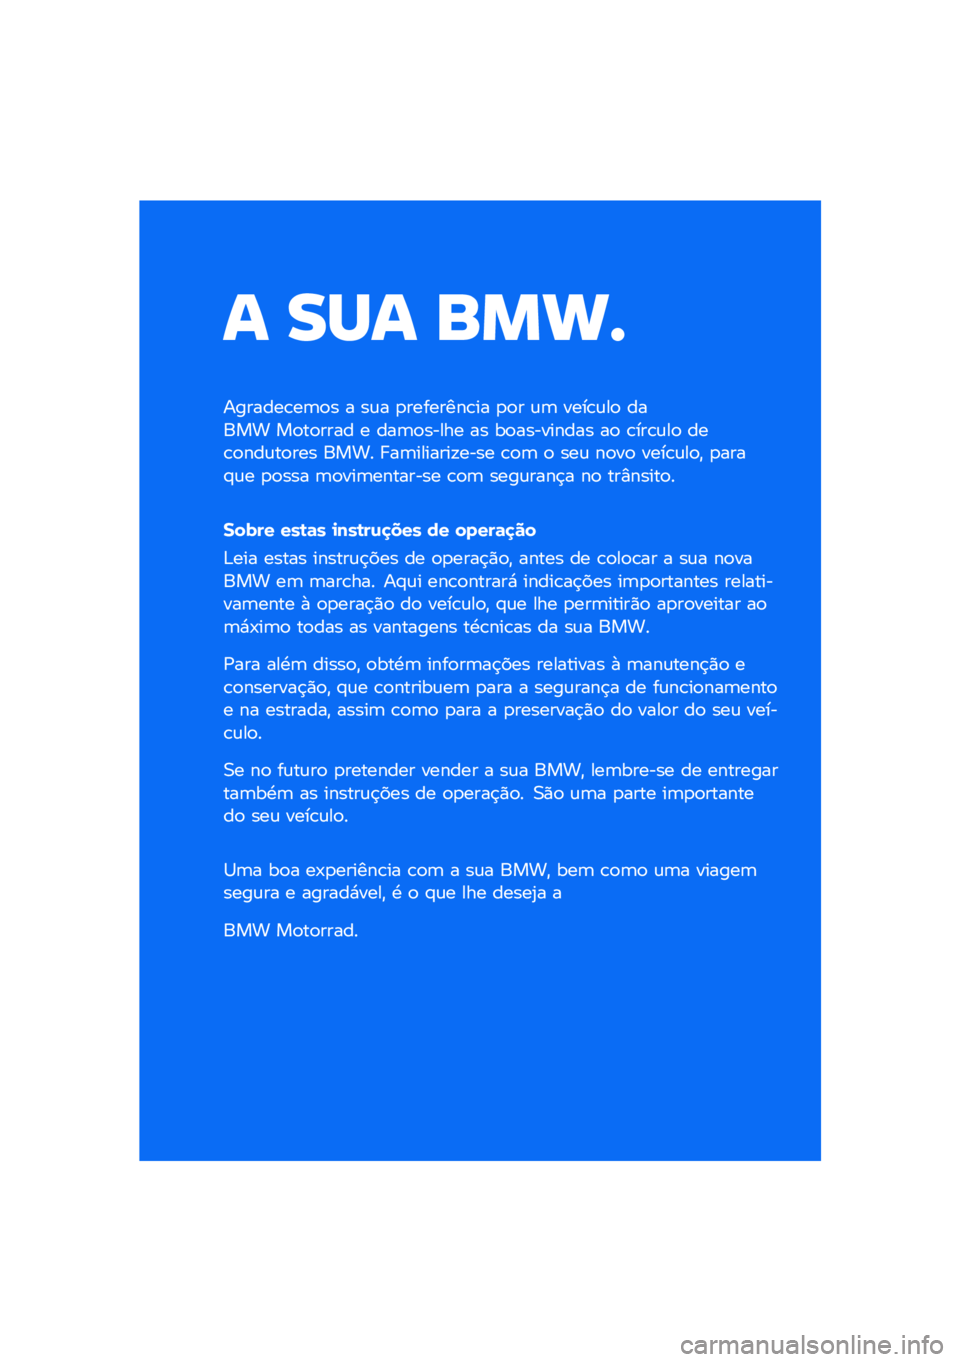 BMW MOTORRAD F 850 GS 2021  Manual do condutor (in Portuguese) � ��� ����\b
�������\b��	�
� � ��\f� �
��������\b�� �
�
� �\f�	 ����\b�\f��
 ����� ��
��
���� � ���	�
����� �� ��
��������� ��
 �\b���